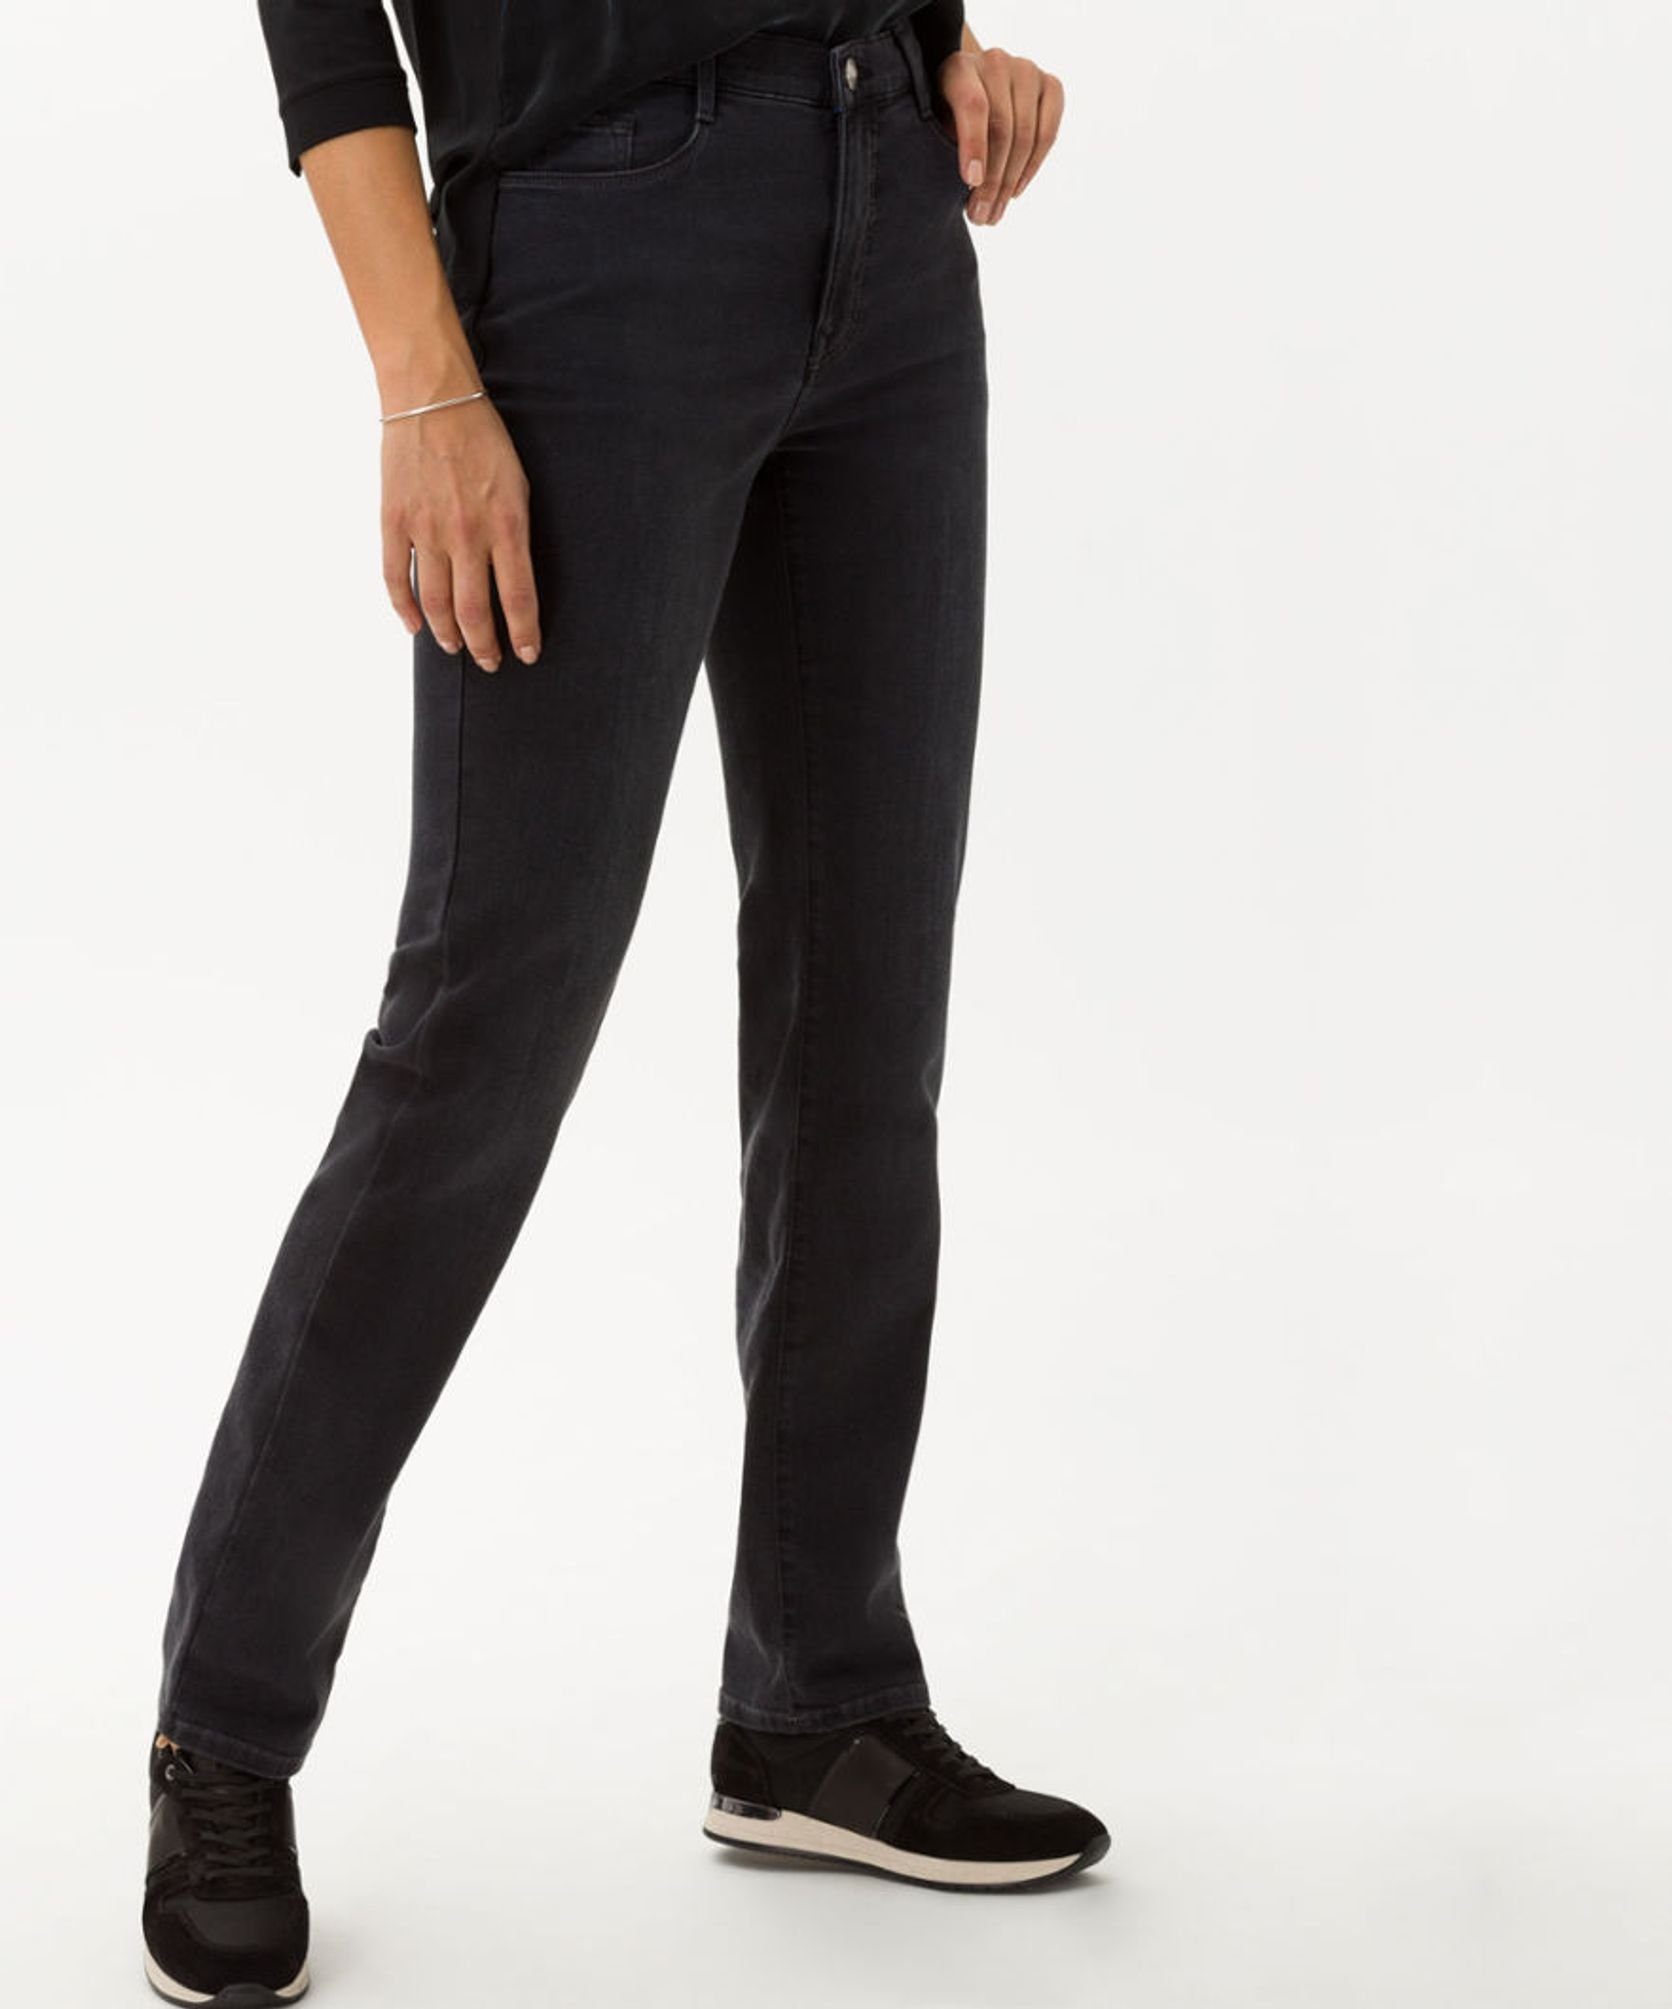 (03) Brax used 5-Pocket-Jeans black 70-4000